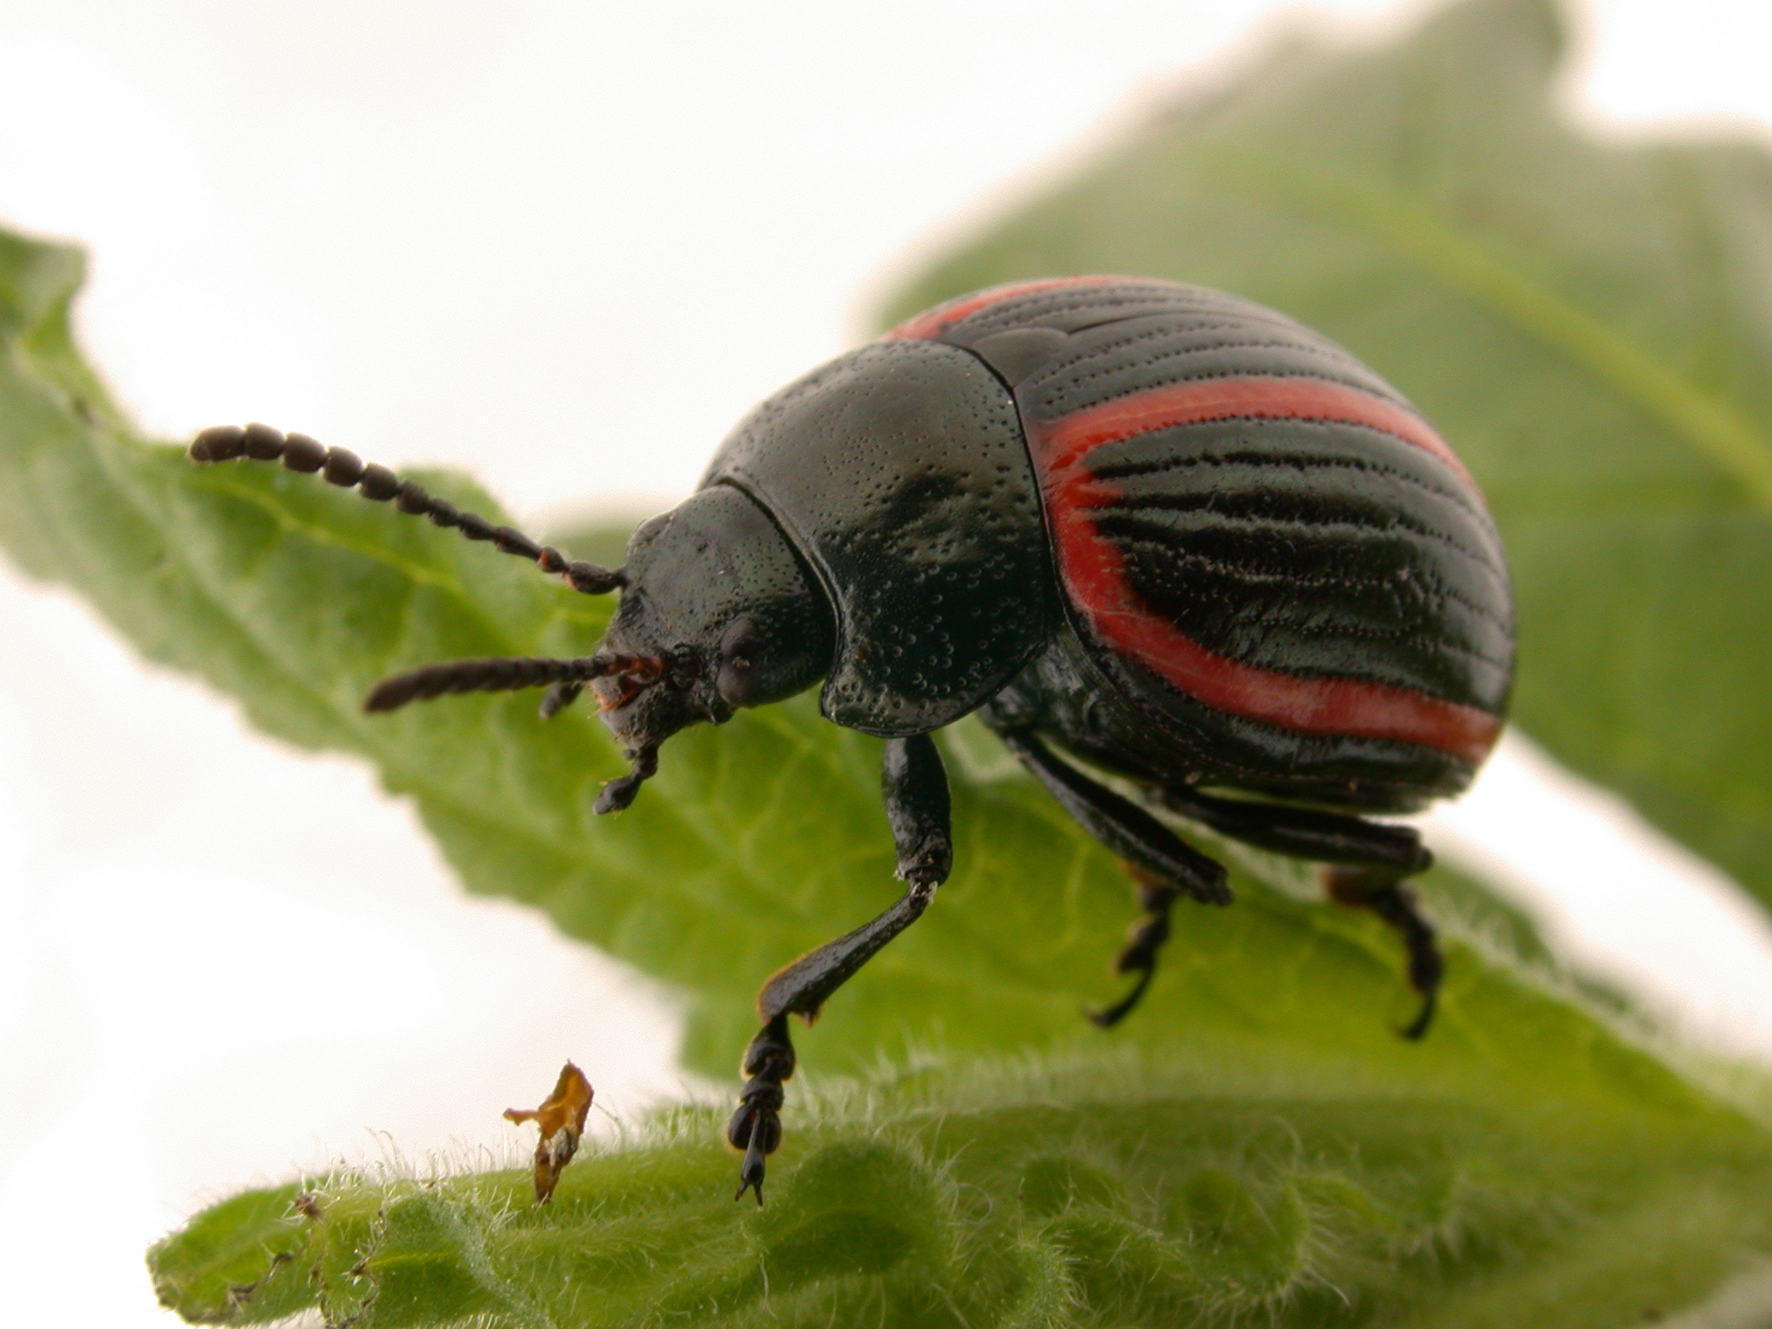 A beetle feeding on a leaf